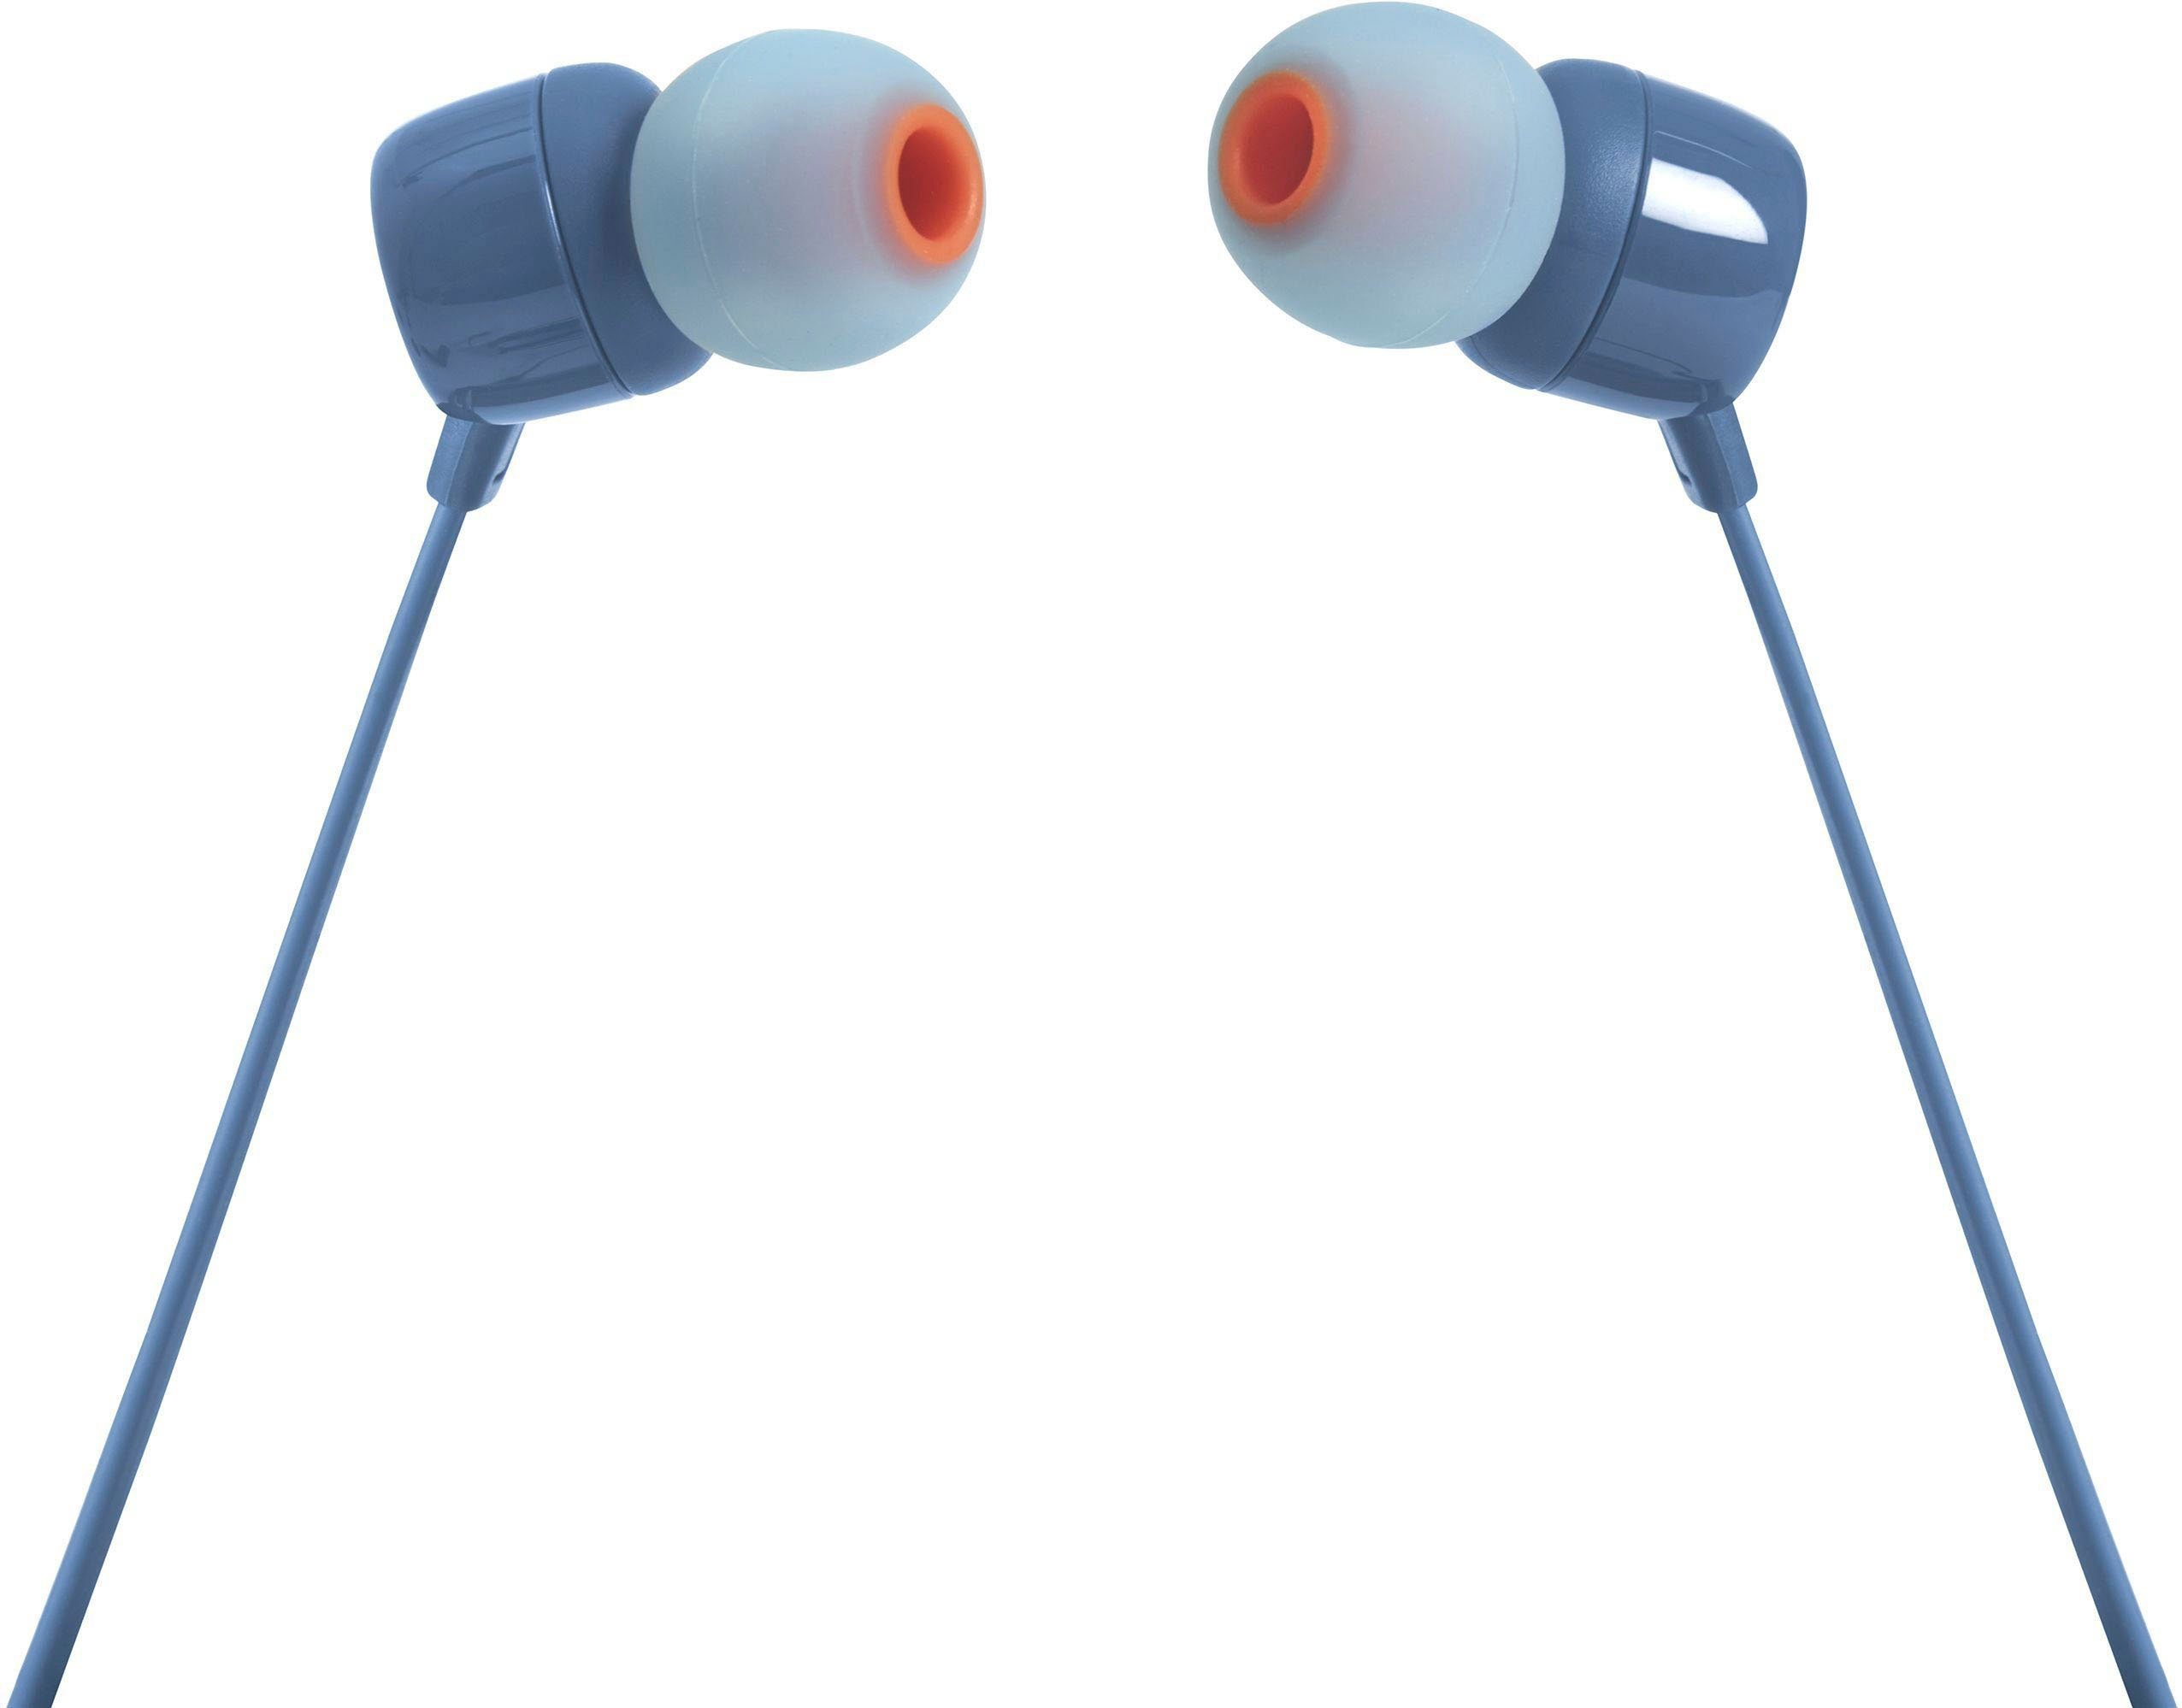 JBL T110 blau In-Ear-Kopfhörer